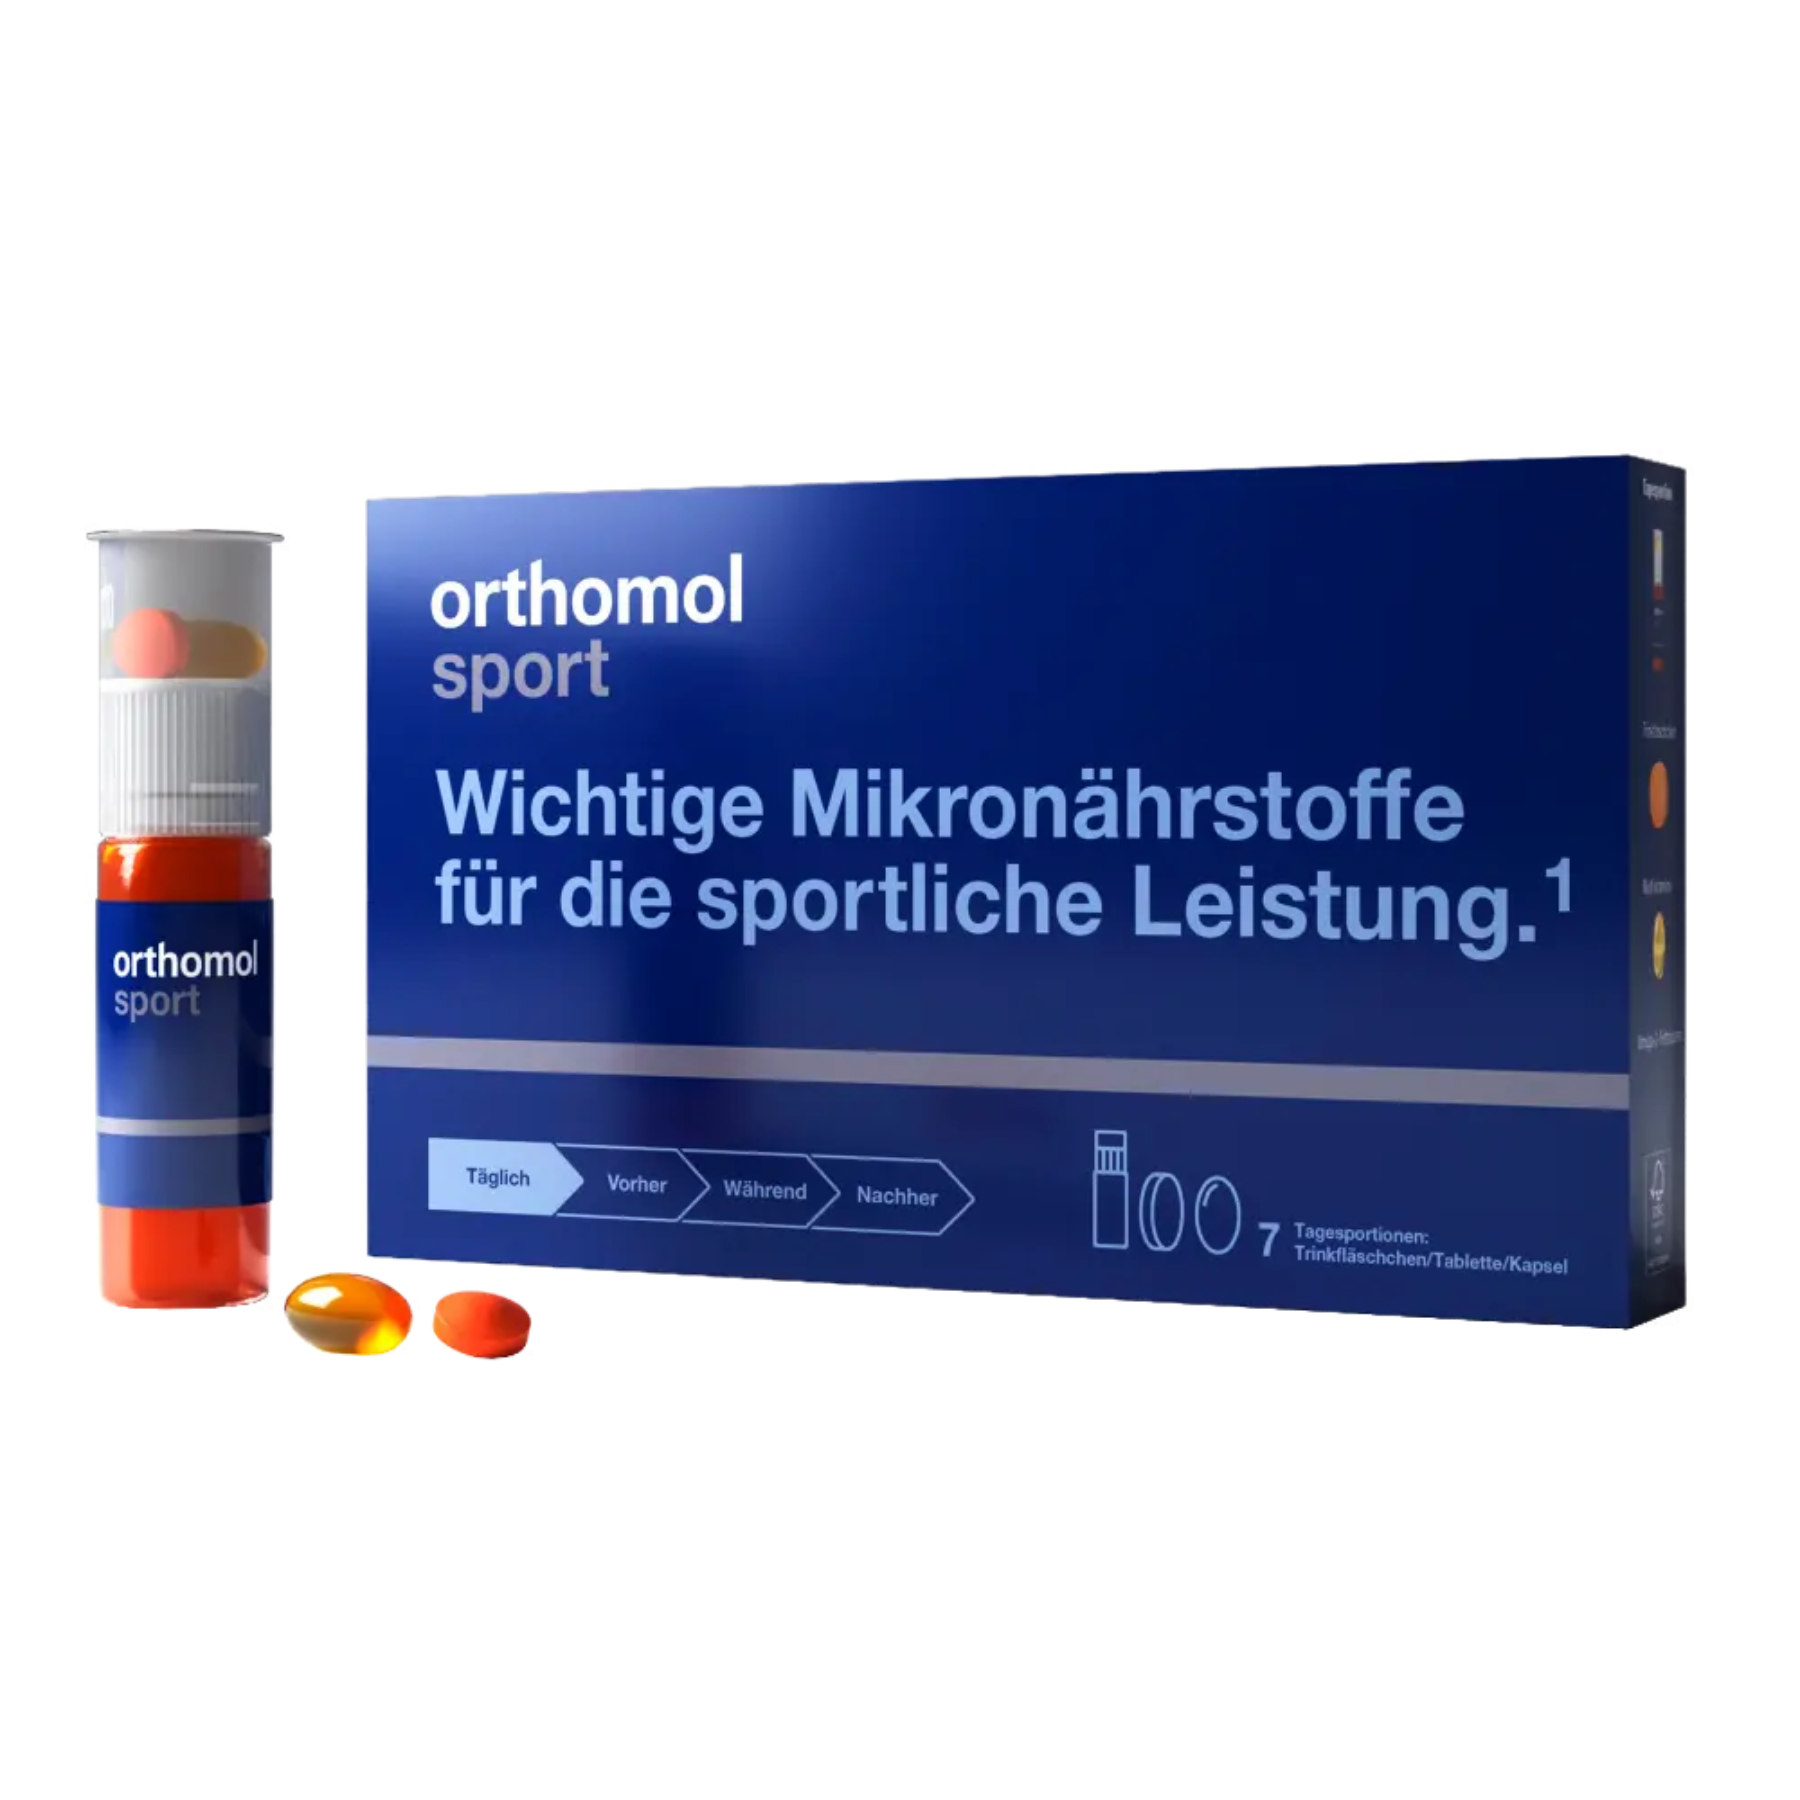 Питьевая суспензия-таблетки-капсулы Orthomol Sport (витамины для спортсменов), 7 дней